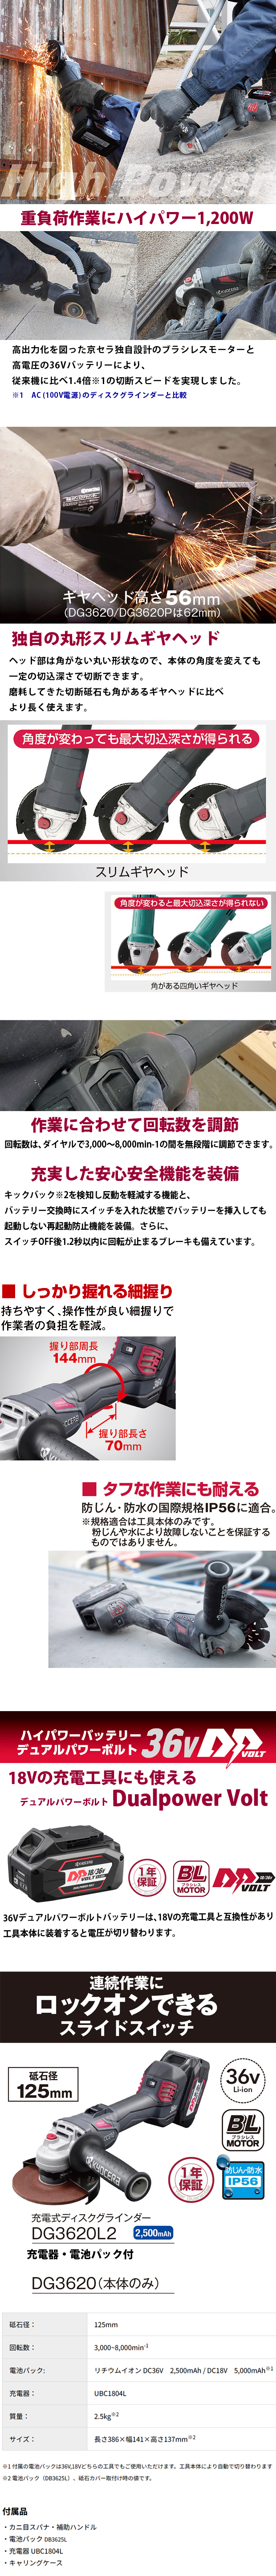 京セラ 充電式ディスクグラインダ DG3620L2 砥石径125mm スライドスイッチ